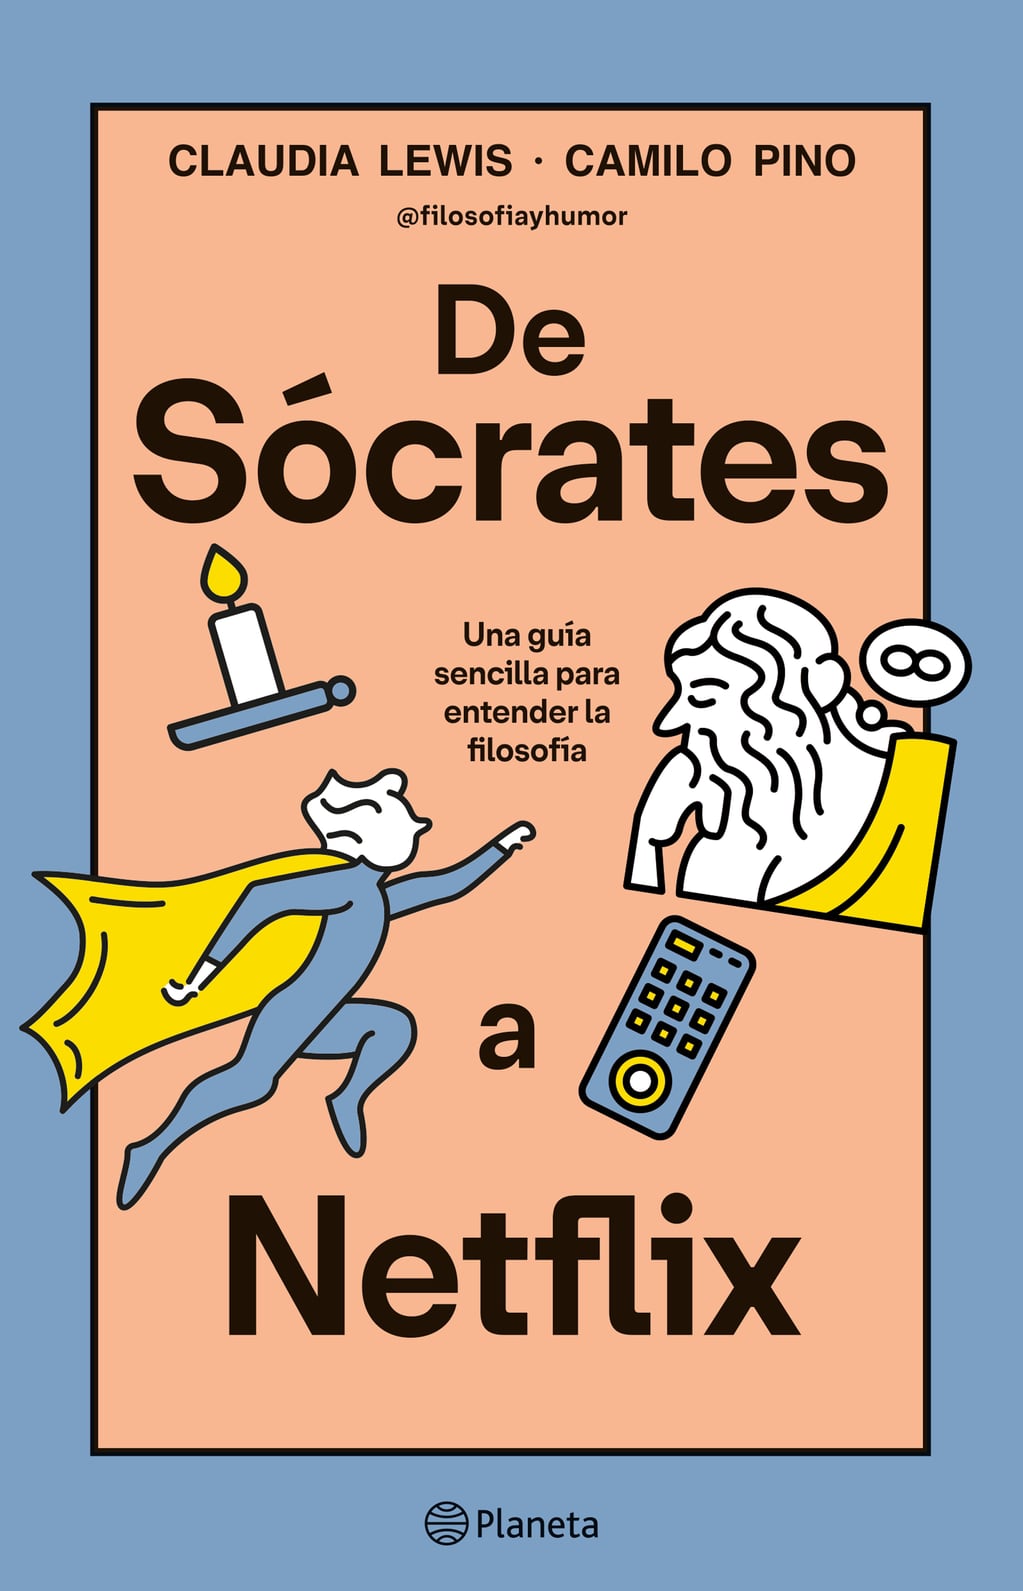 Filósofos explican sus ideas con monitos y series de Netflix